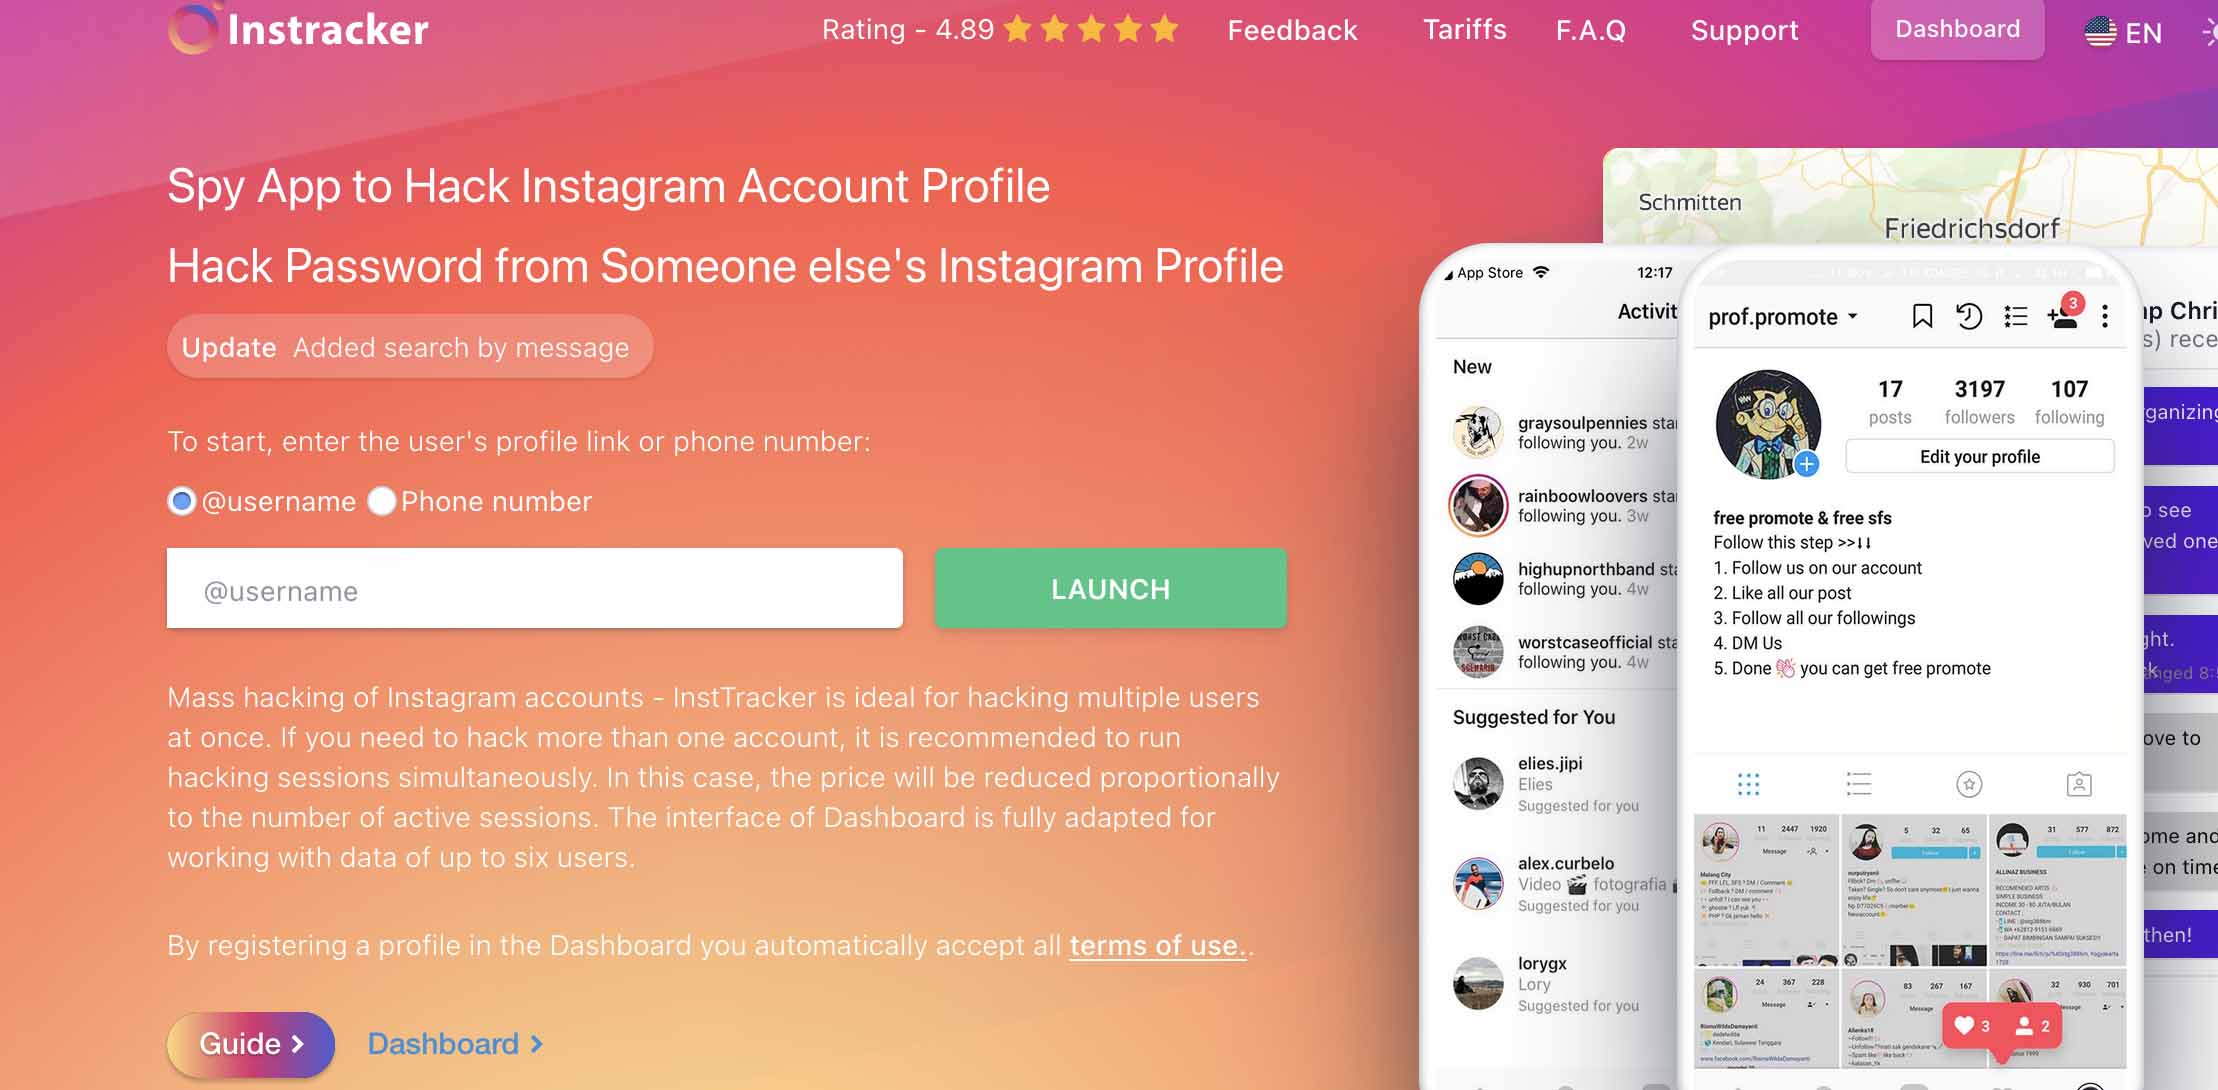 InsTracker le ayuda a averiguar a quién le gusta una persona en Instagram